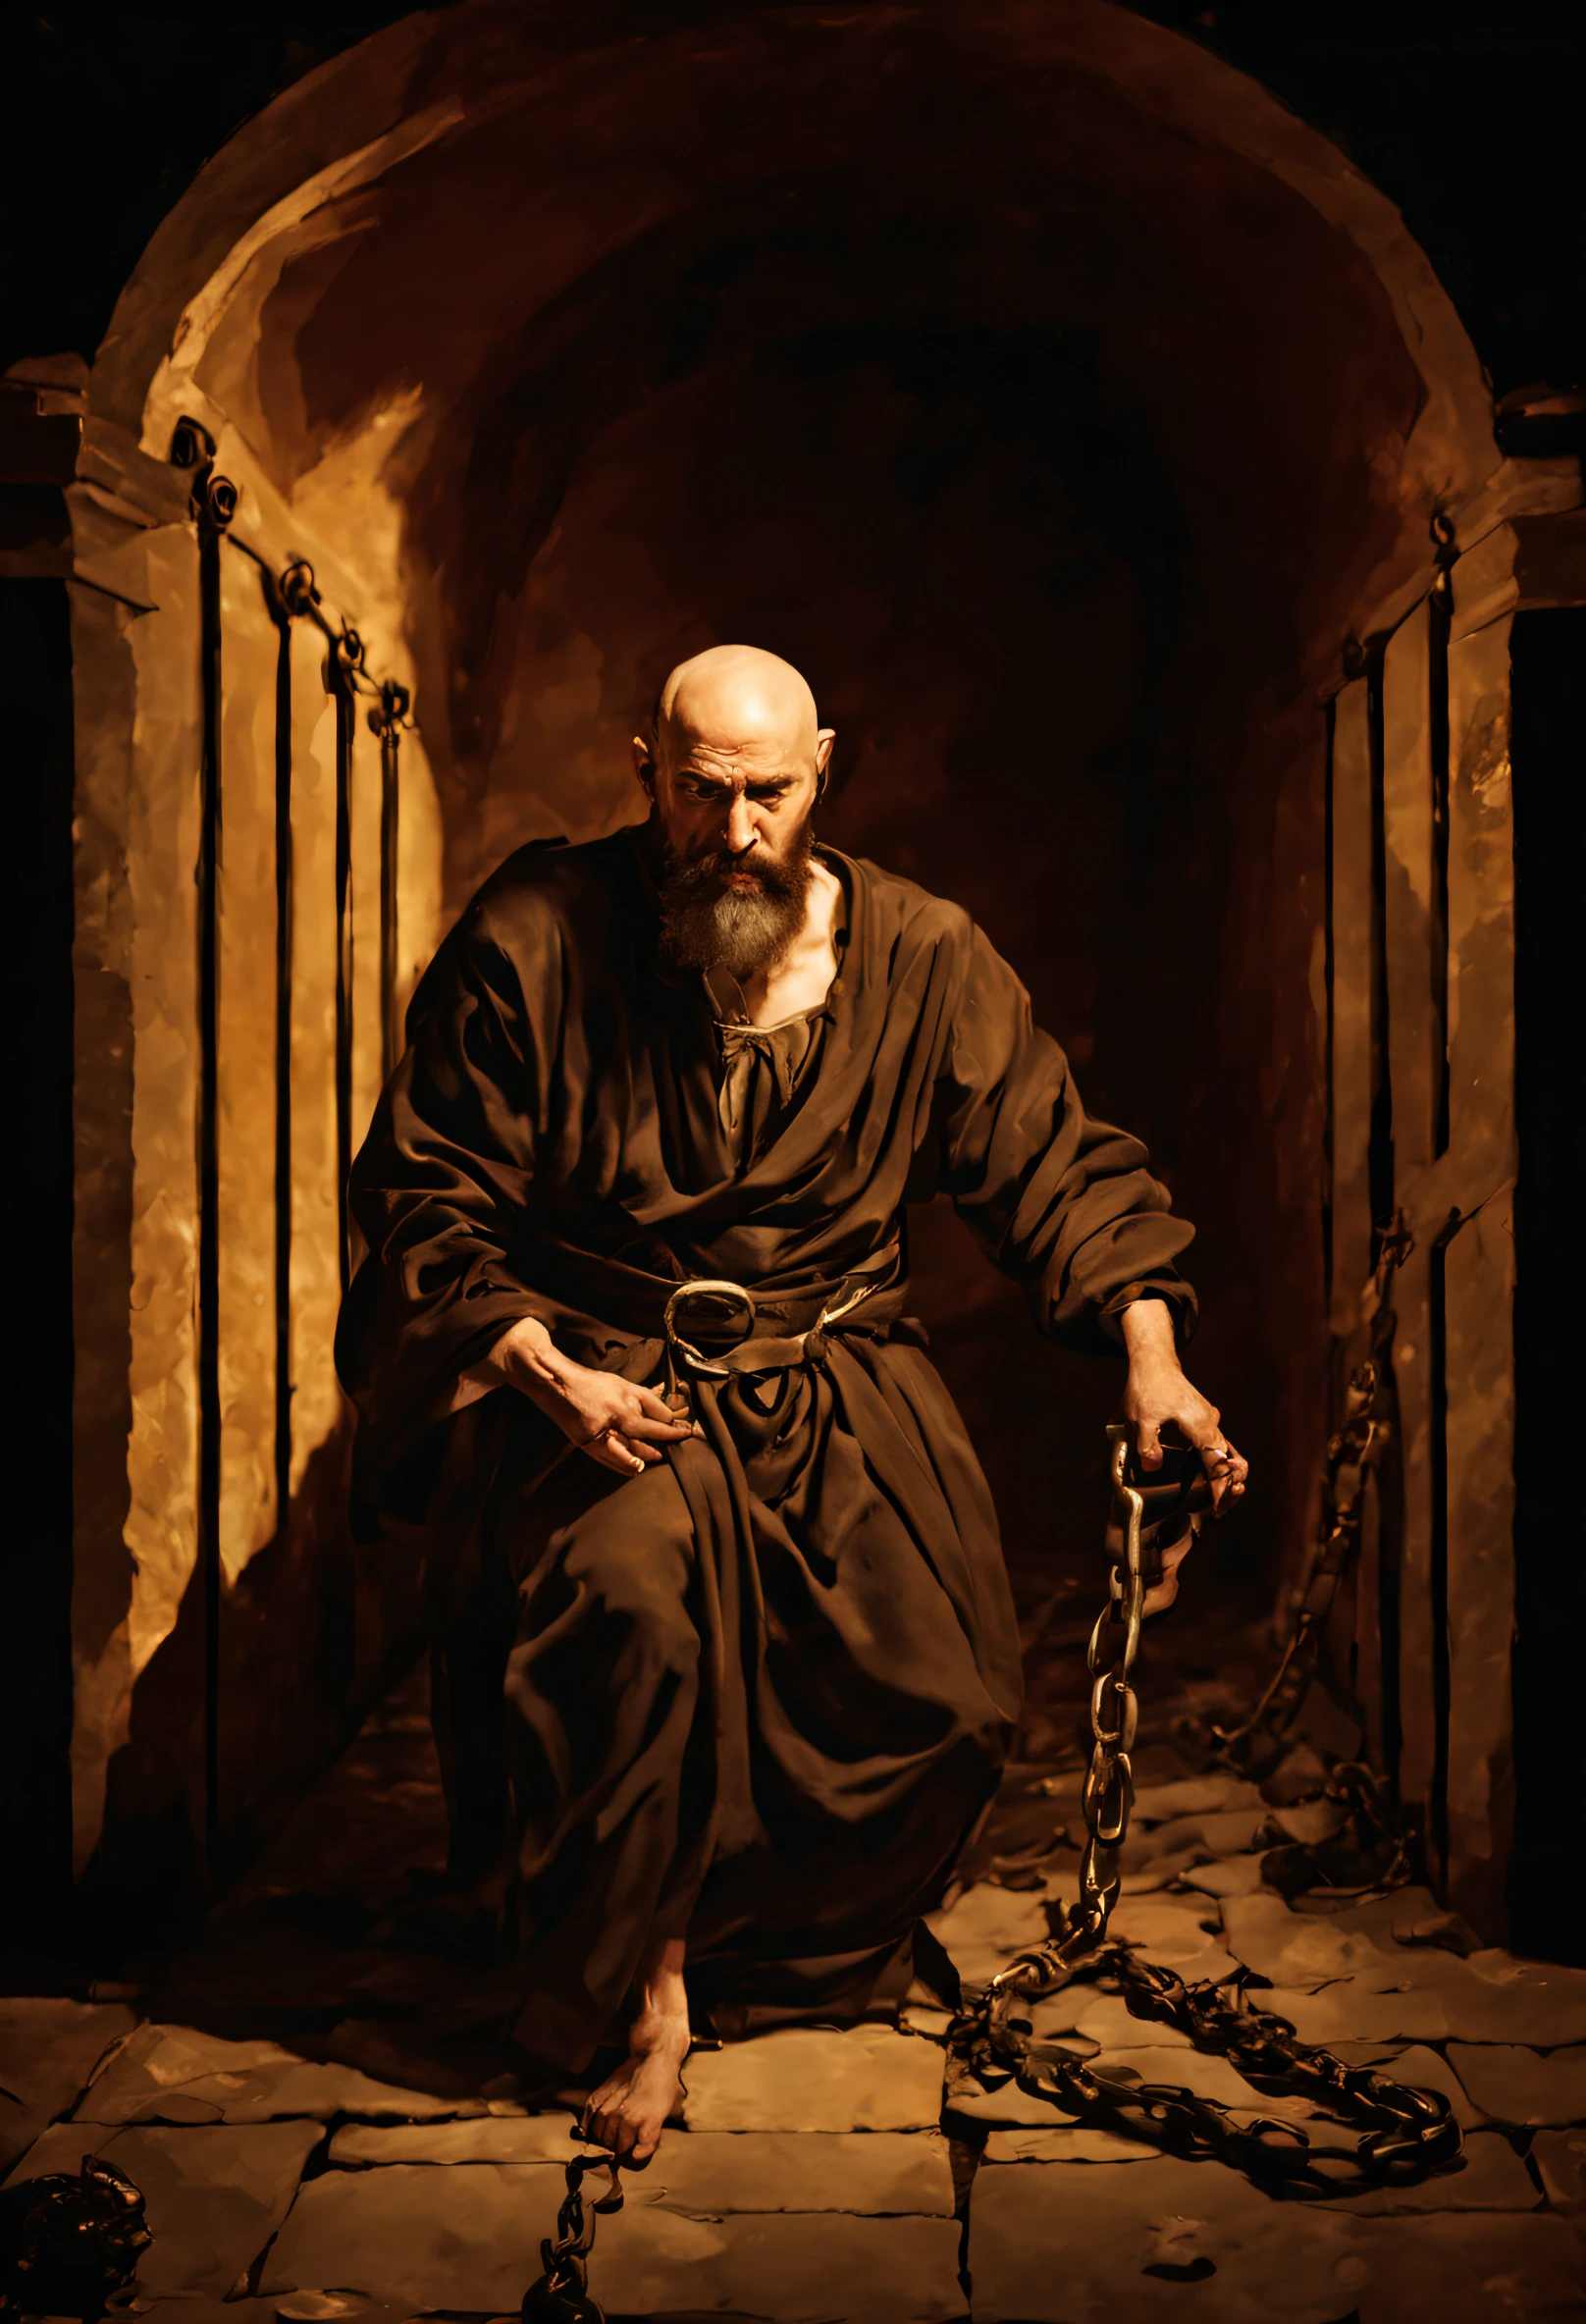 一個禿頭的男人, 留著長鬍子的男人, 撕破的衣服, 位於耶路撒冷一座古老牢房的牢房底部, 受傷嚴重且流血, 令人驚嘆的, 生動華麗的傑作, 卡拉瓦喬, 8K